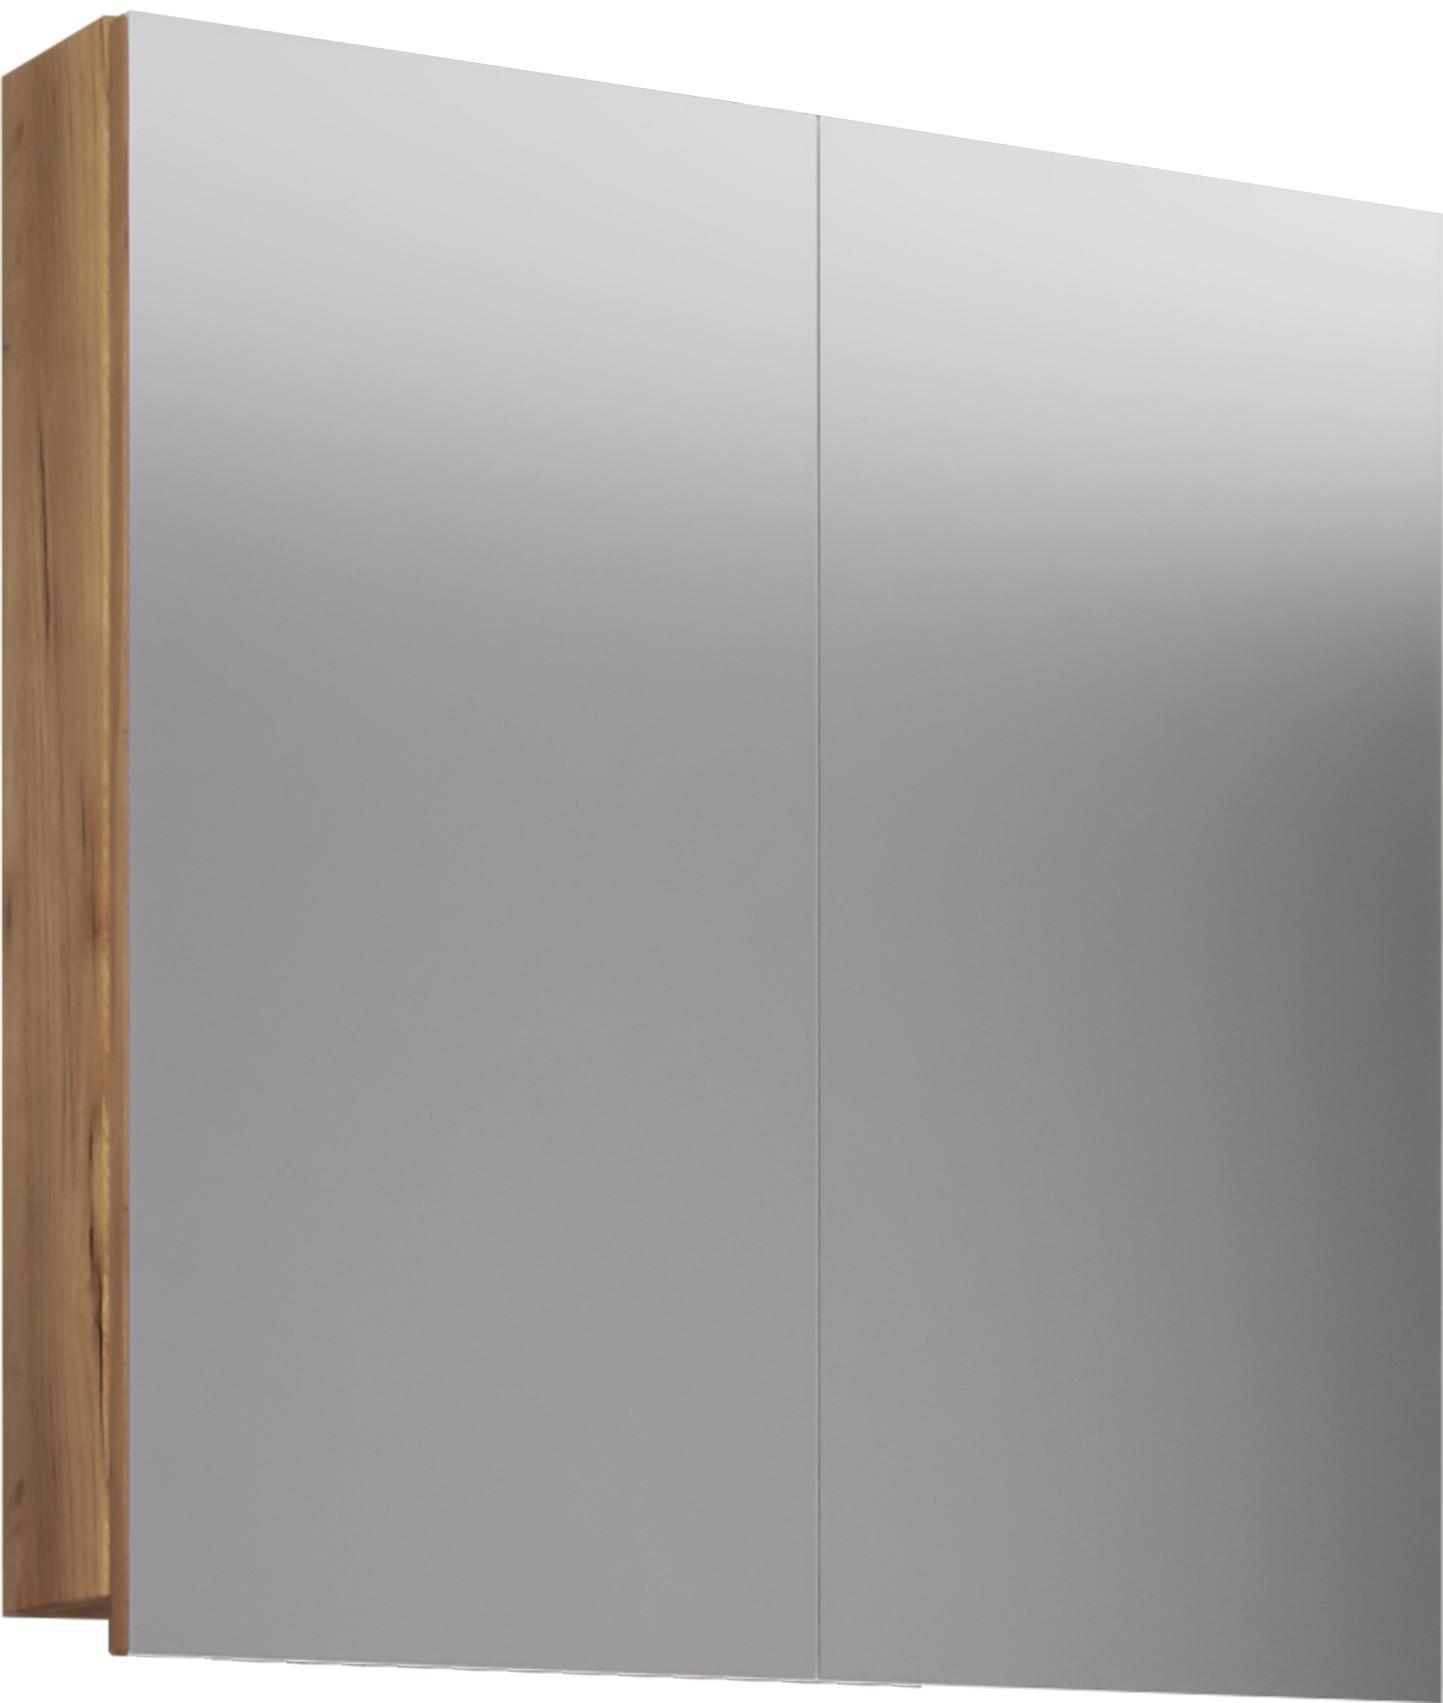 VCM Badspiegel Wandspiegel Hängespiegel Spiegelschrank Badezimmer Badinos 59 x 60 cm  